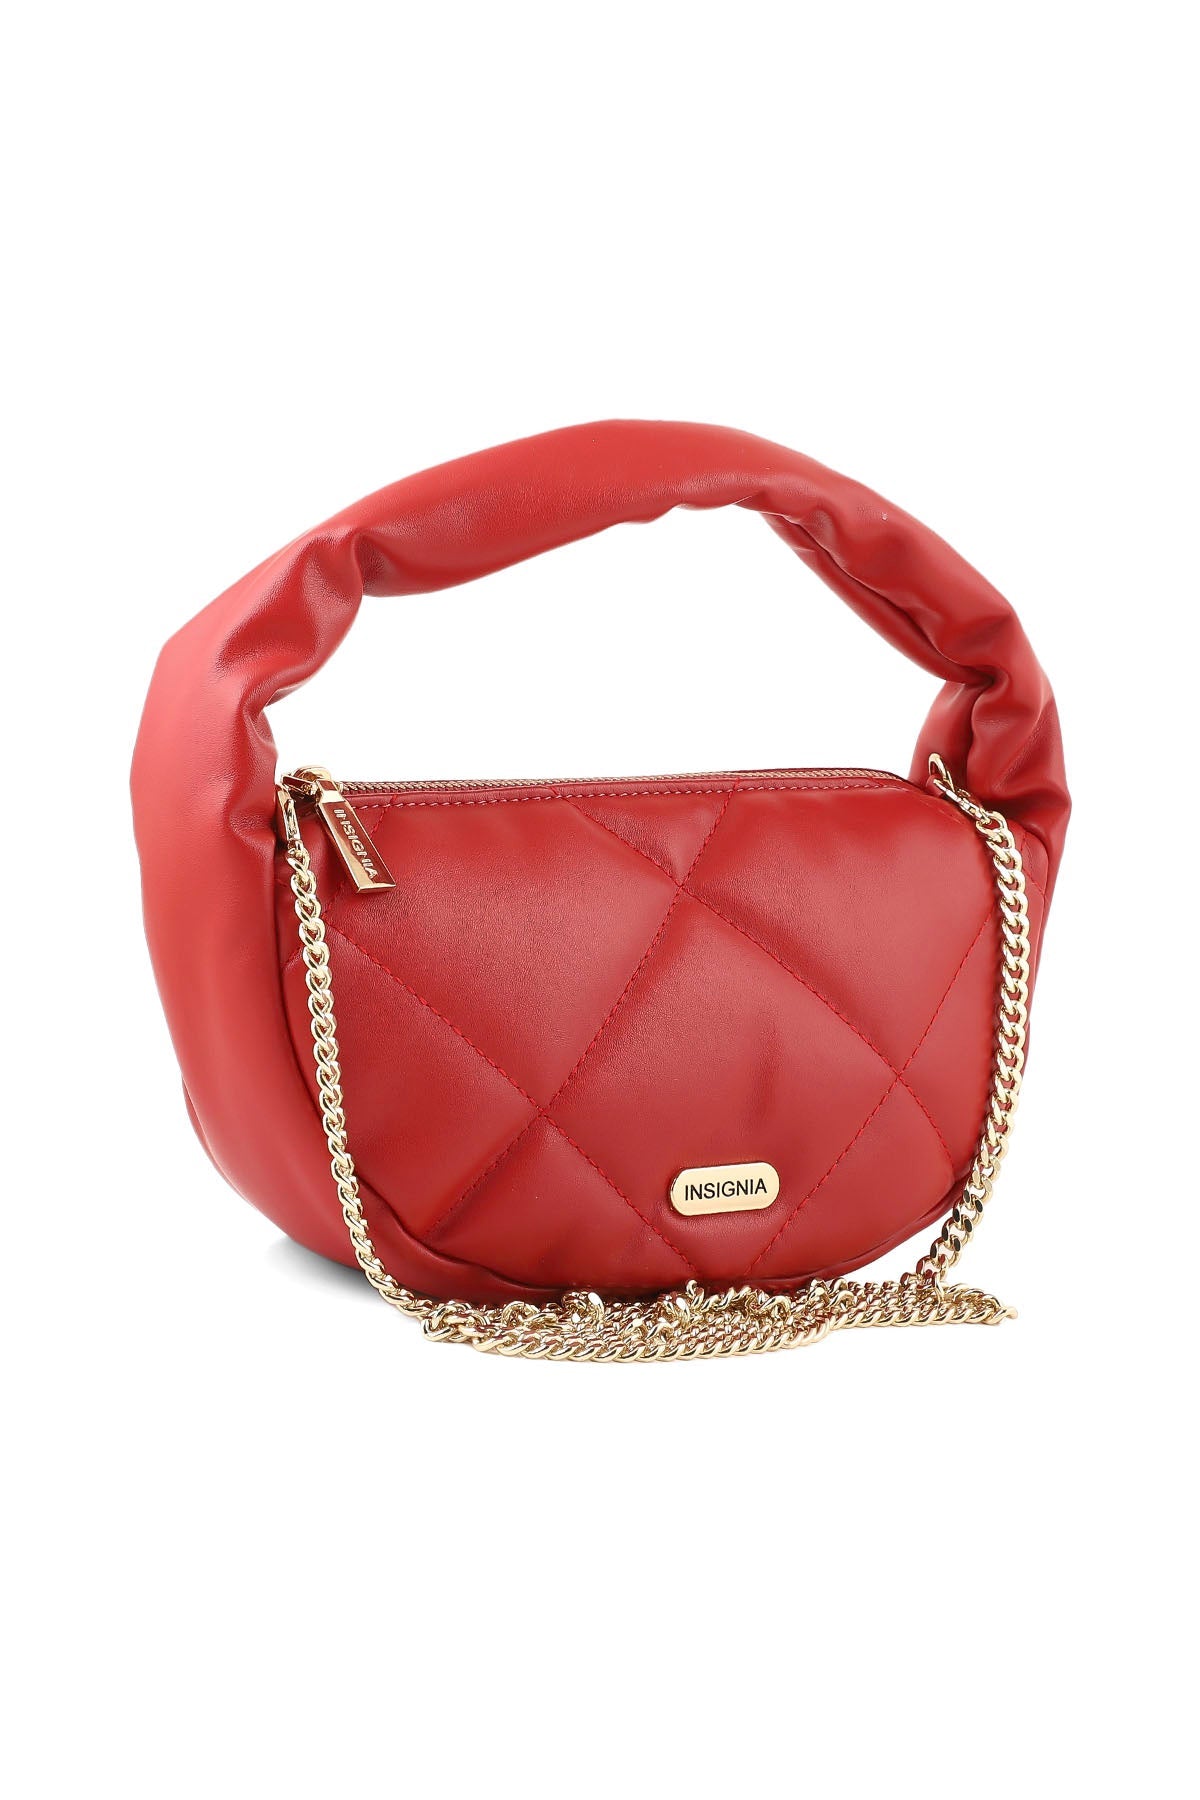 Hobo Hand Bags B15006-Red